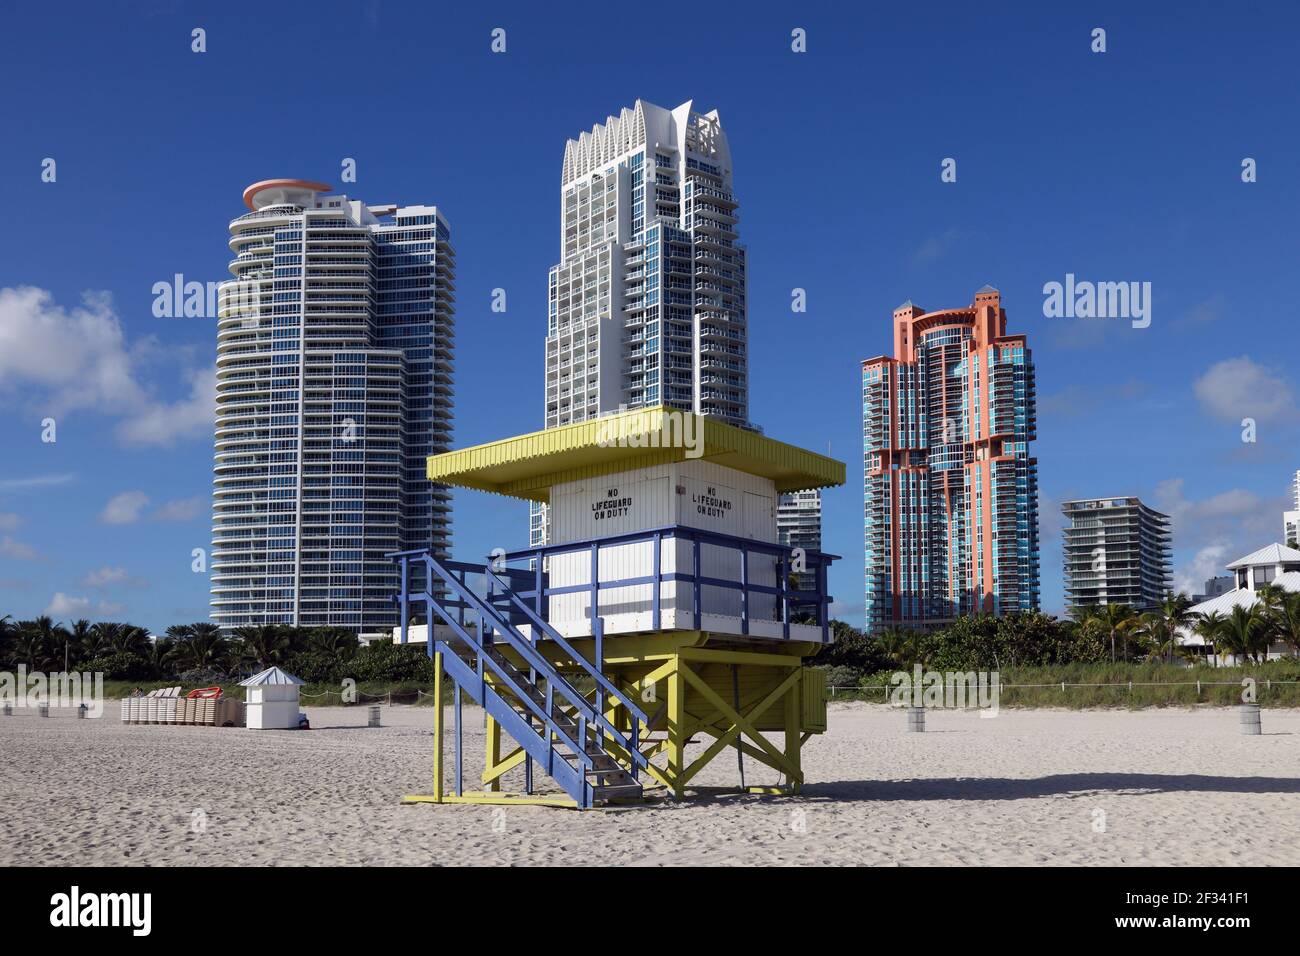 Geografia / viaggio, Stati Uniti, Florida, Miami Beach, Baywatch station (Life Guard piccola casa), Miami Beach, diritti aggiuntivi-clearance-Info-non-disponibile Foto Stock